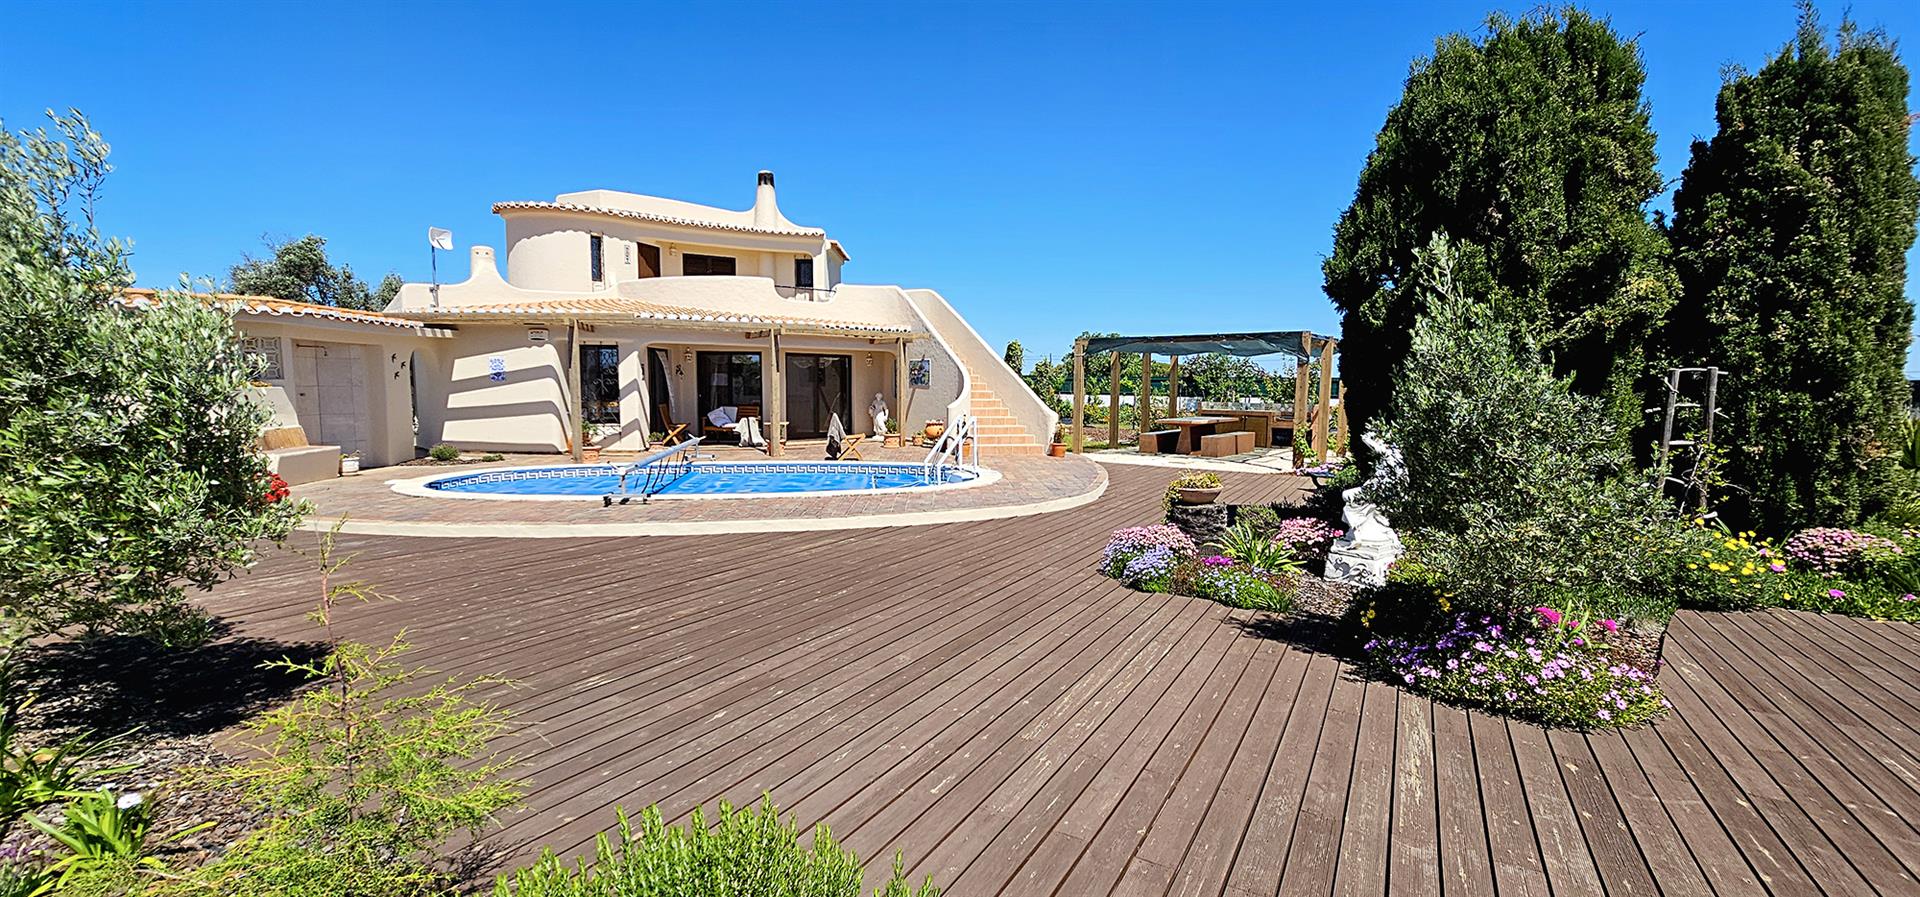 Bienvenue dans votre future maison dans la belle Algarve